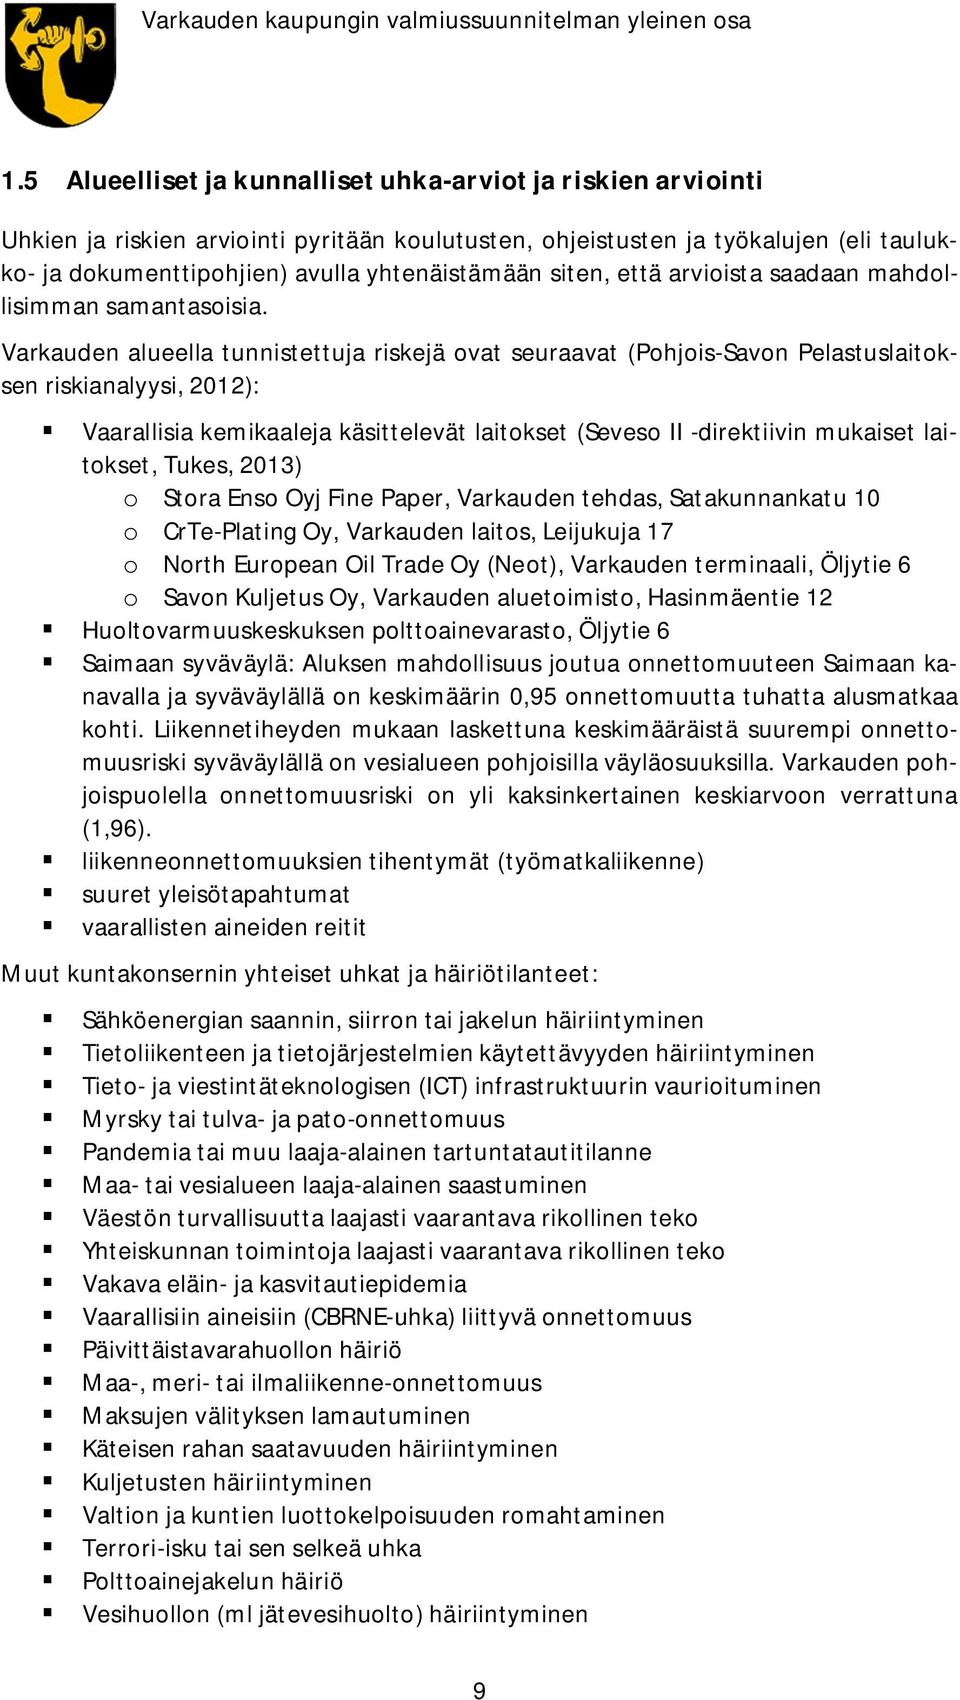 Varkauden alueella tunnistettuja riskejä ovat seuraavat (Pohjois-Savon Pelastuslaitoksen riskianalyysi, 2012): Vaarallisia kemikaaleja käsittelevät laitokset (Seveso II -direktiivin mukaiset